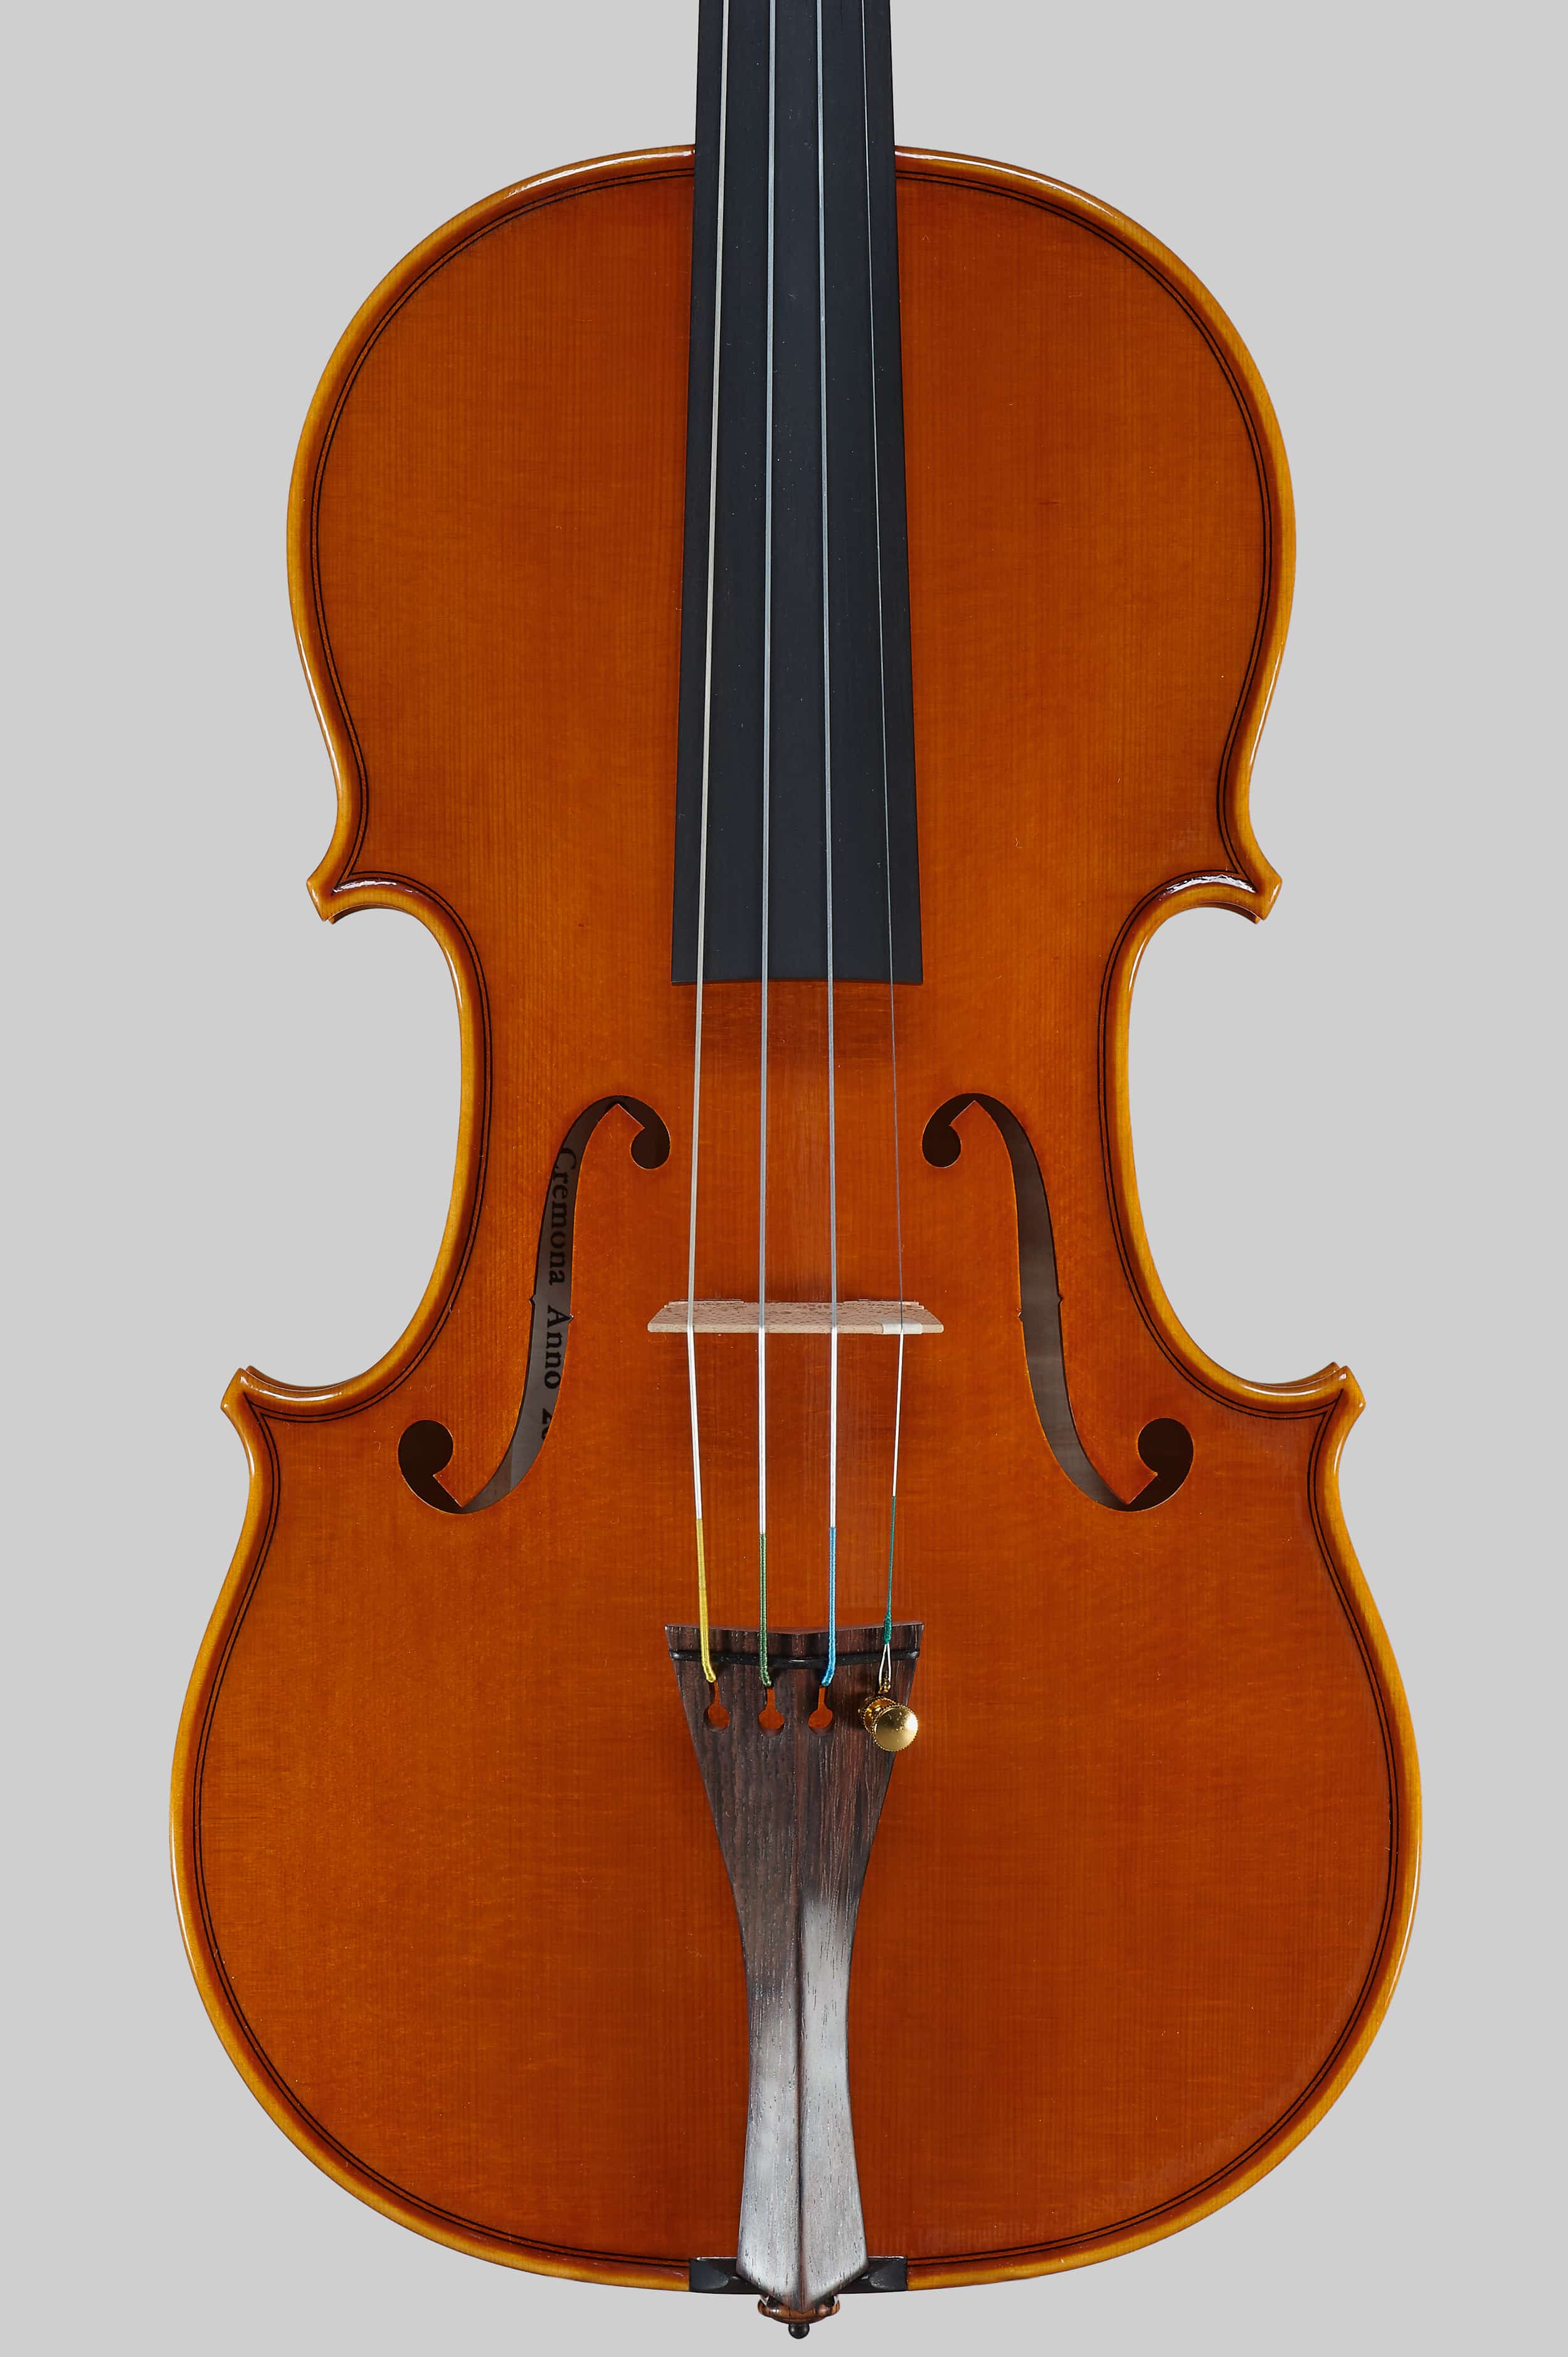 Anno 2015 – Violino modello stile A. Stradivari “Viotti” 1709 - Tavola